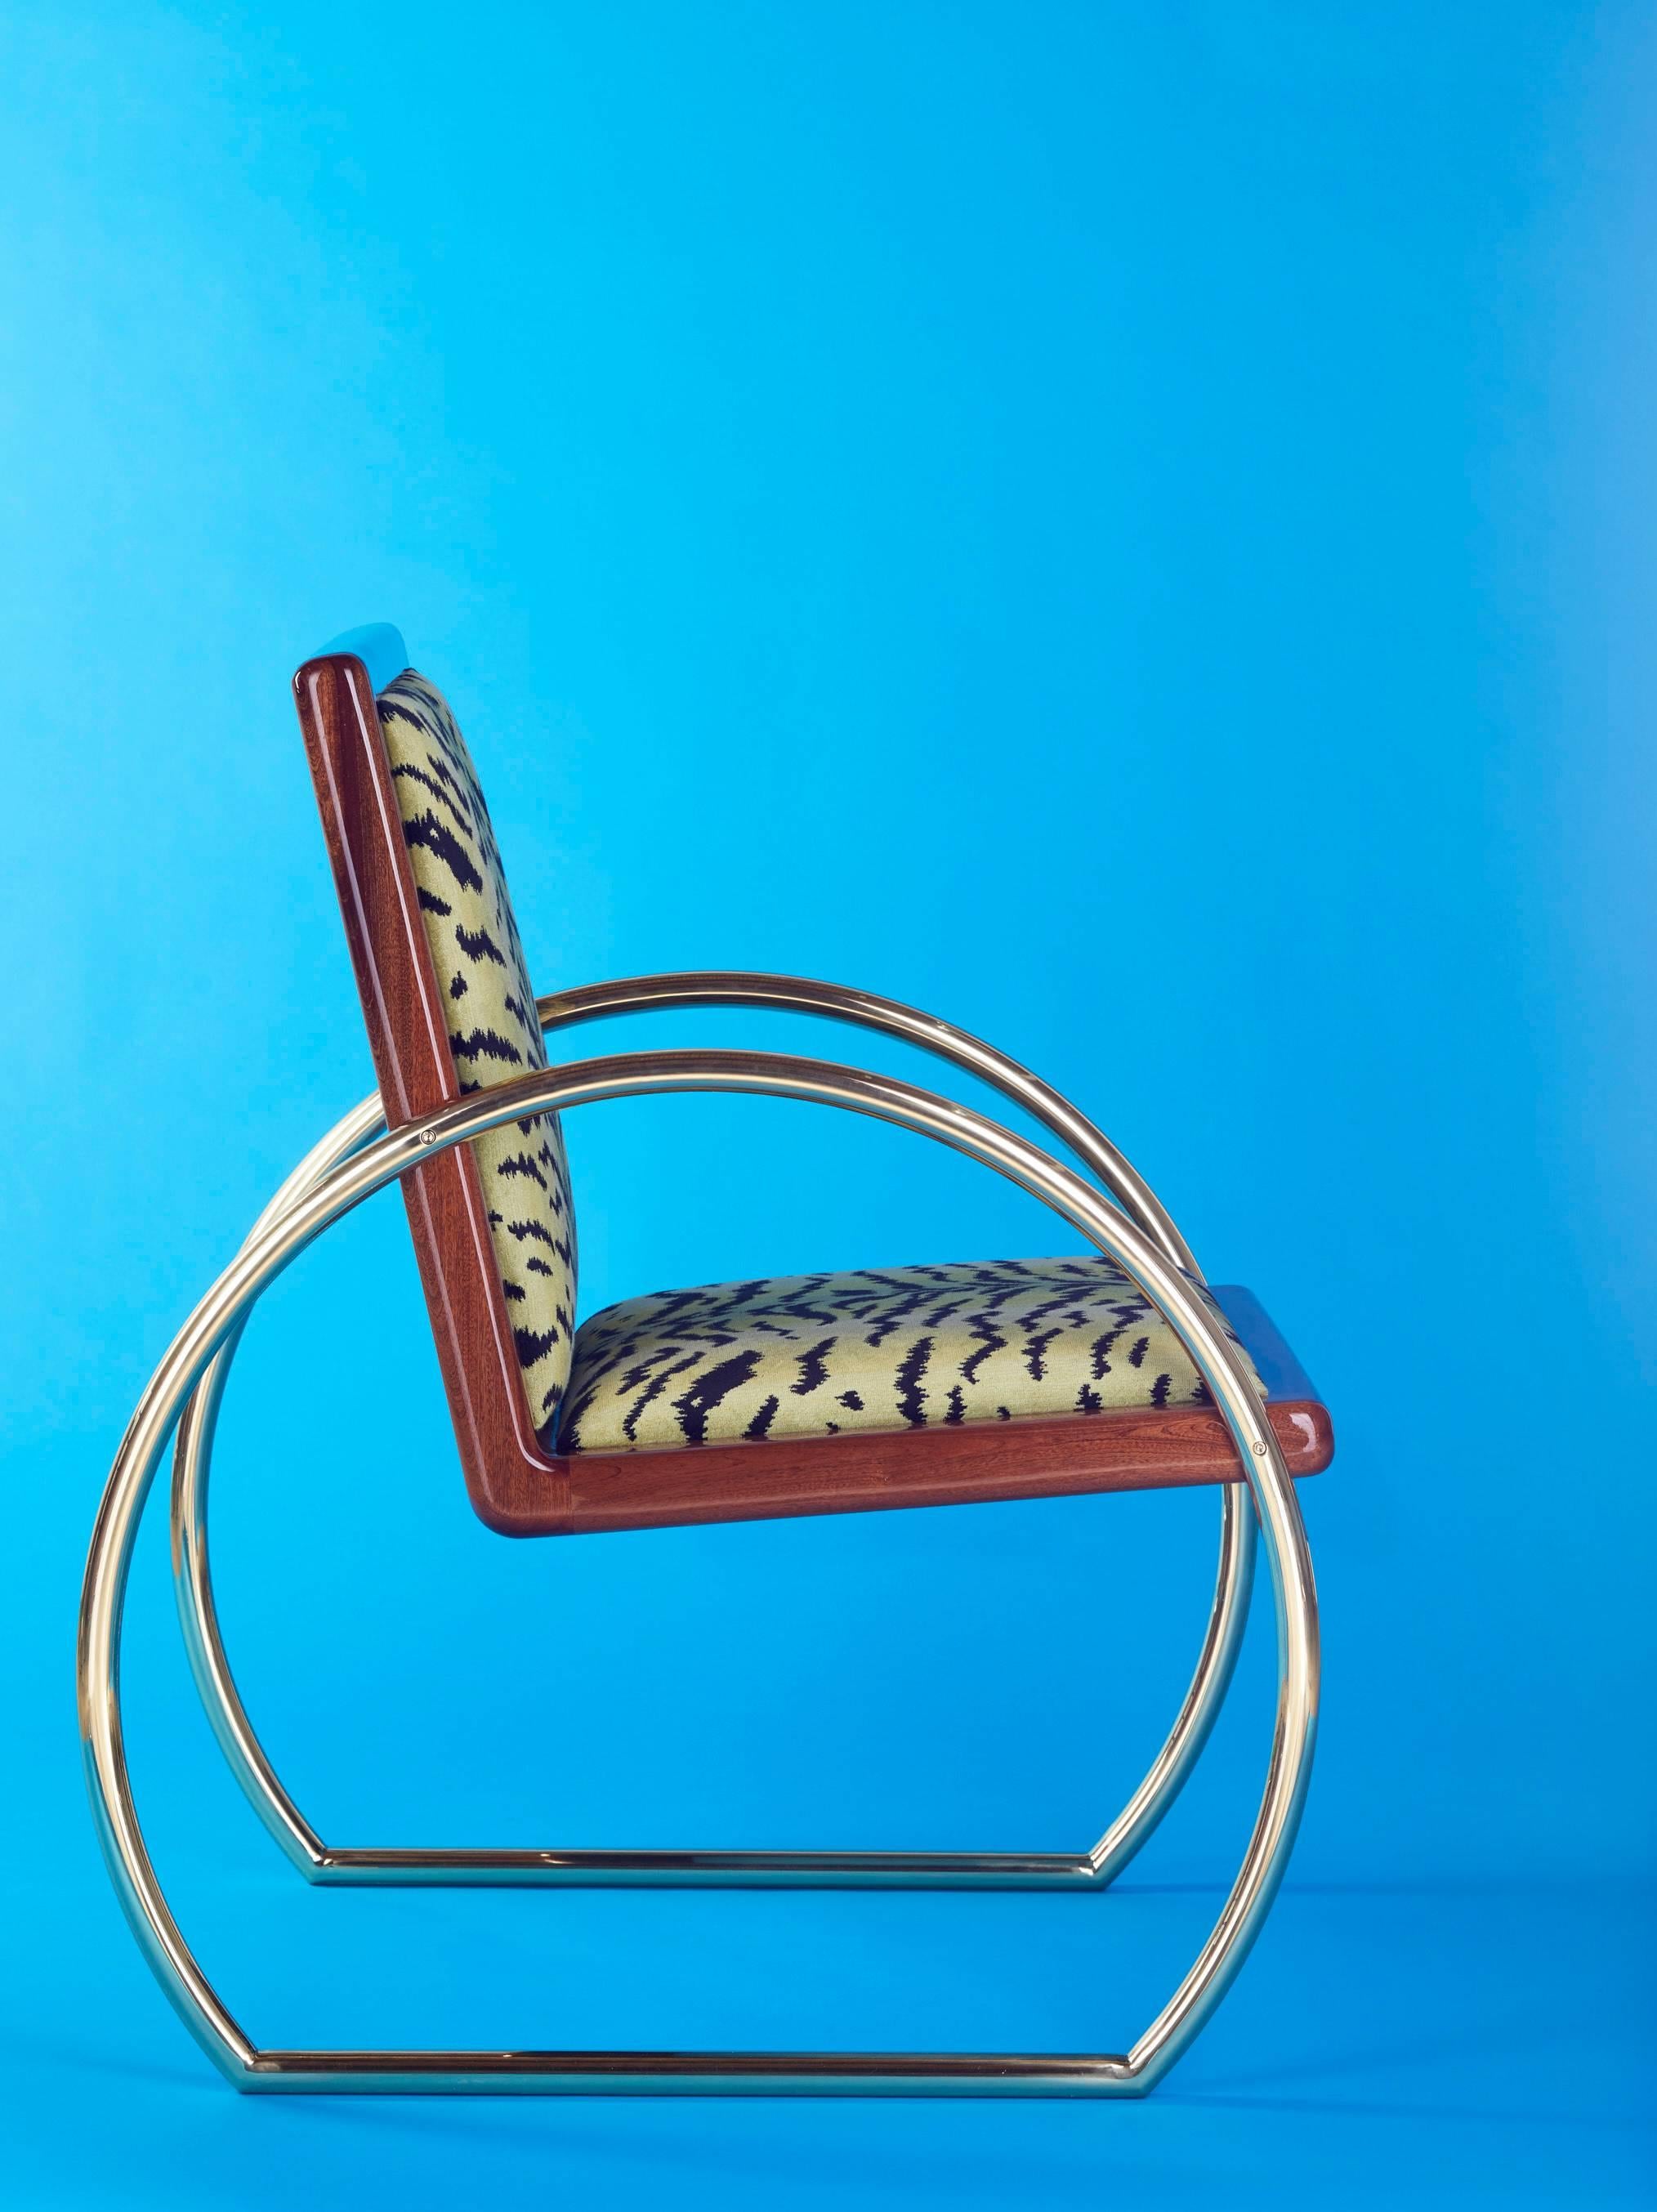 Der D-Ring Lounge Chair ist ein von der Art déco inspirierter Sessel aus Mahagoni, massivem Messing und Samt. 

Das honduranische Mahagoni ist mit mehreren Hochglanzlackschichten lackiert. Die Armlehnen und Beine sind aus hochglanzpoliertem,